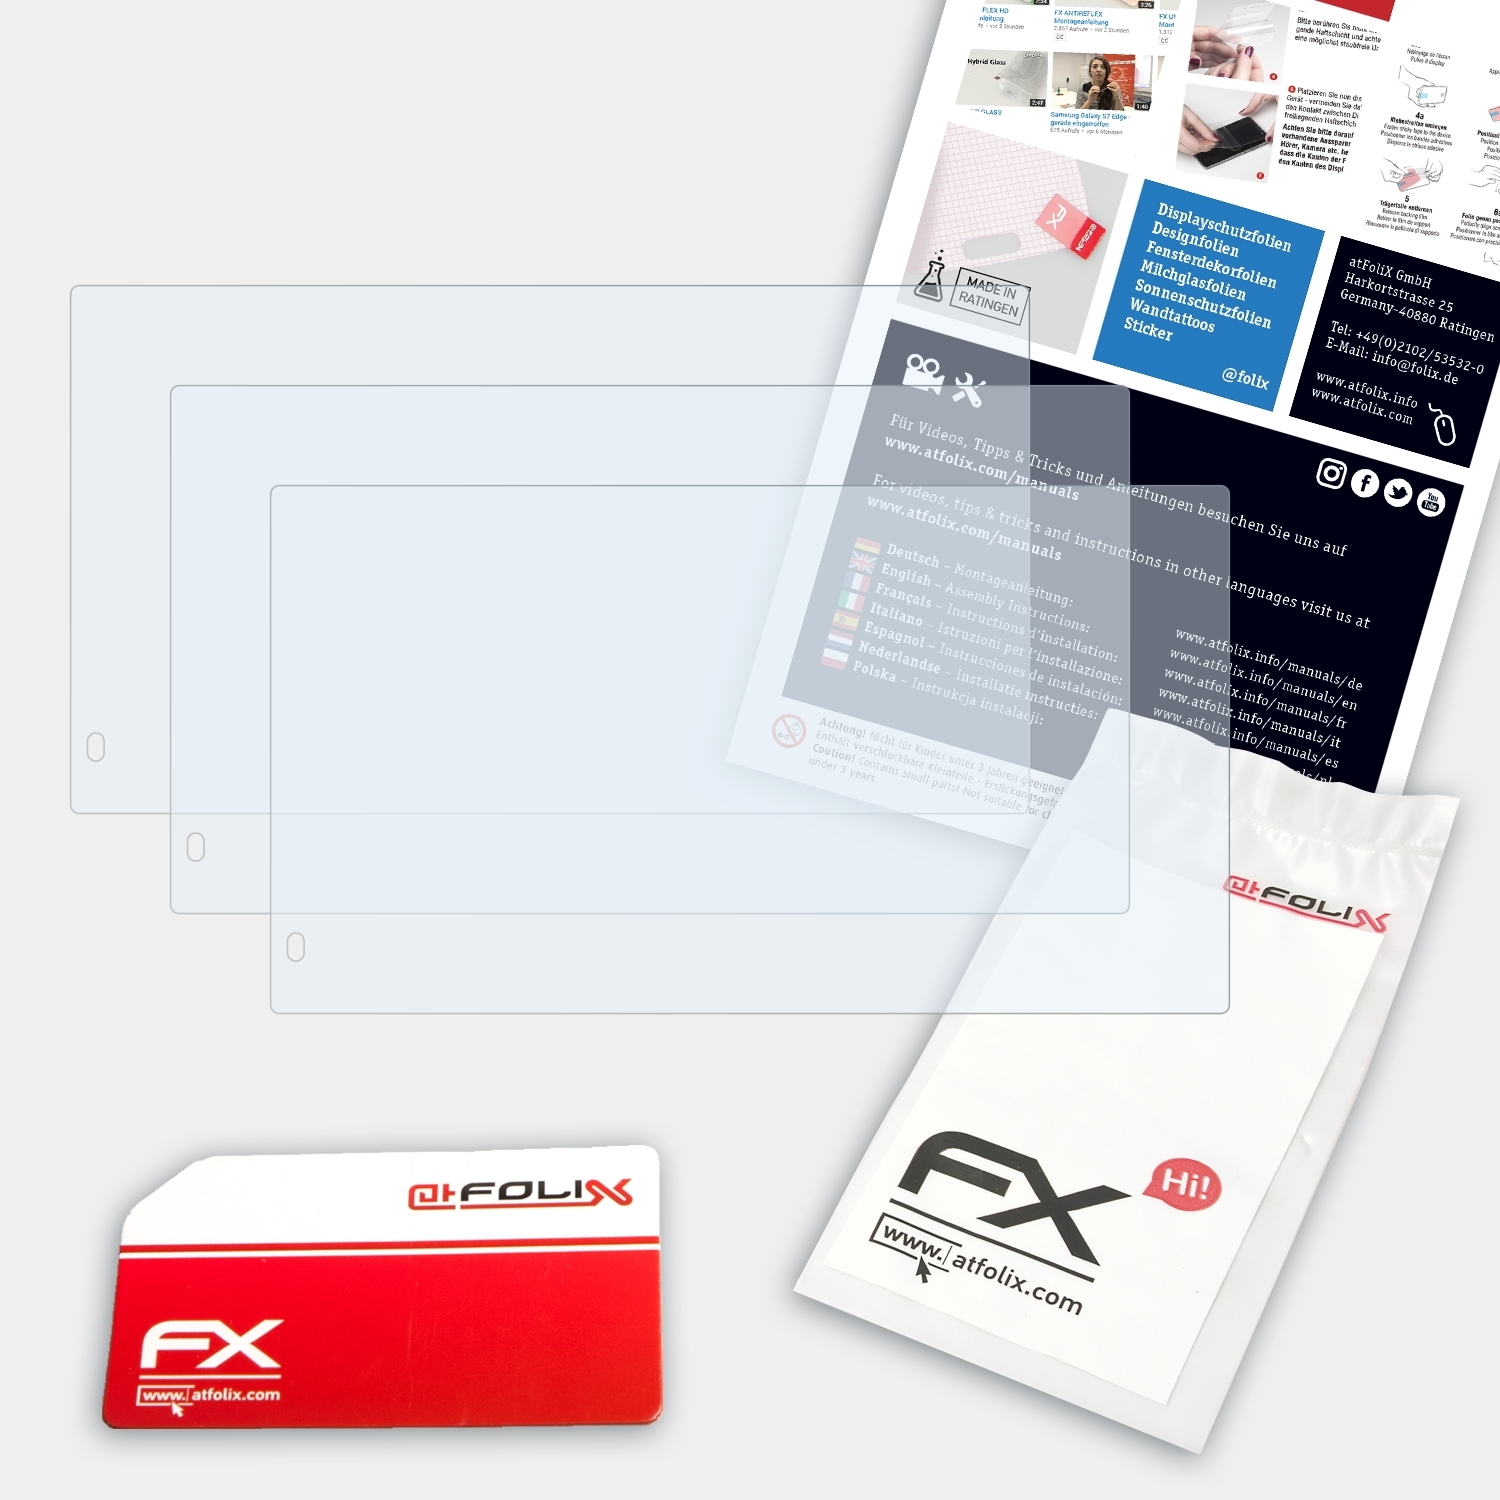 ATFOLIX FX-Clear 3x Displayschutz(für Garmin fleet 660/670)